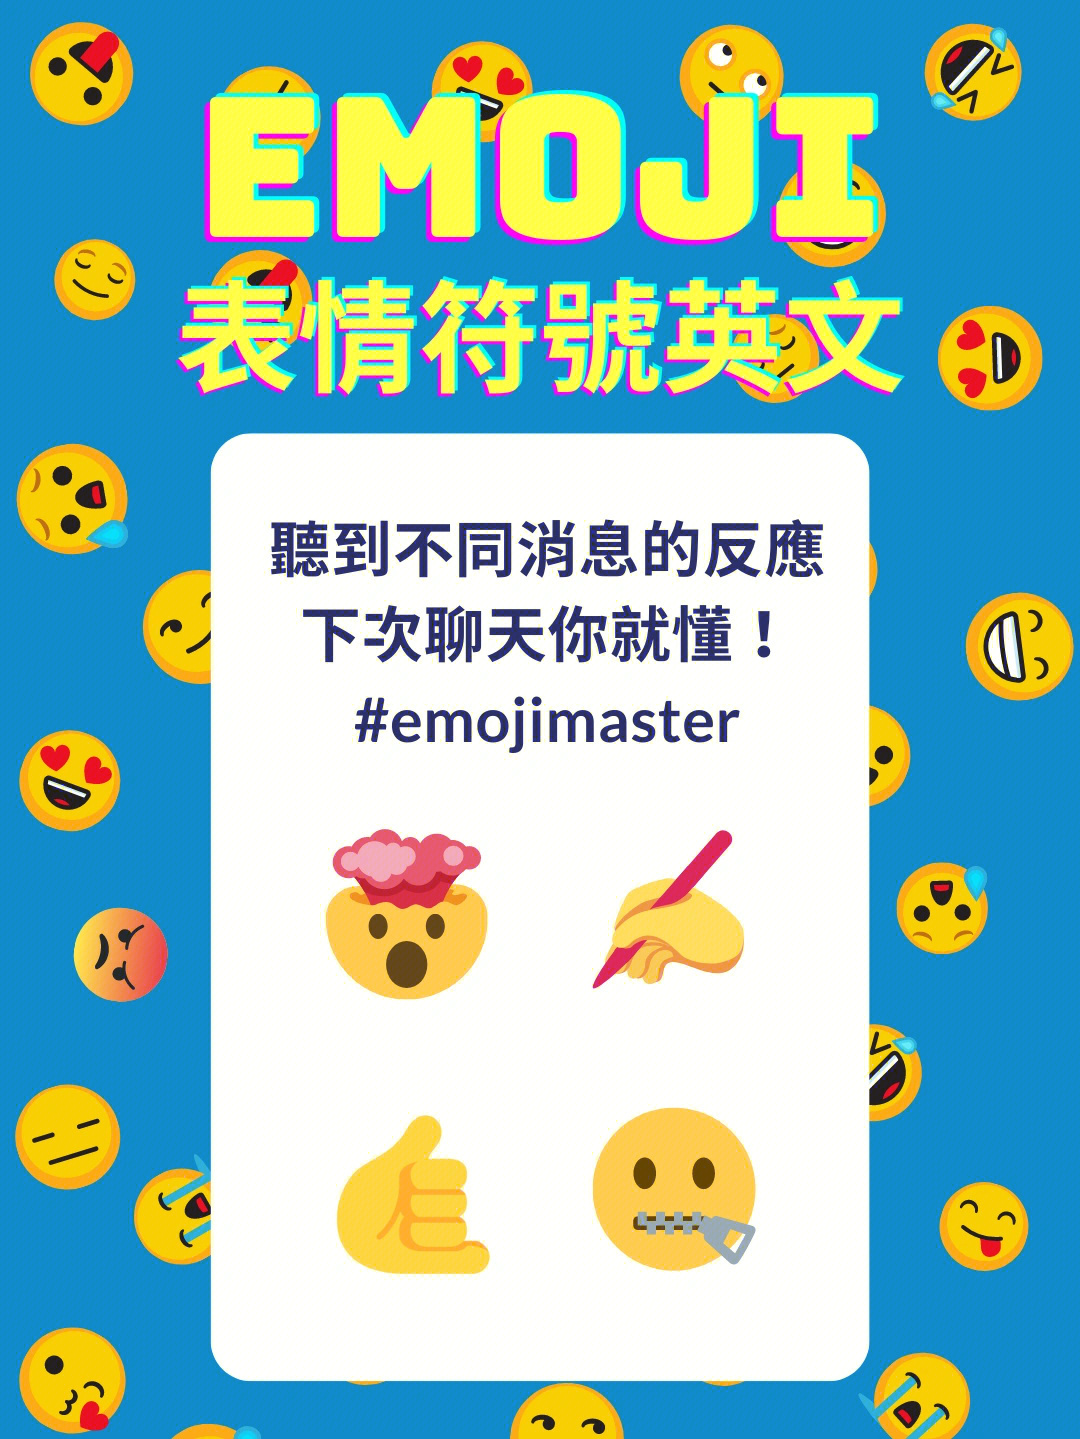 星巴克表情符号emoji图片